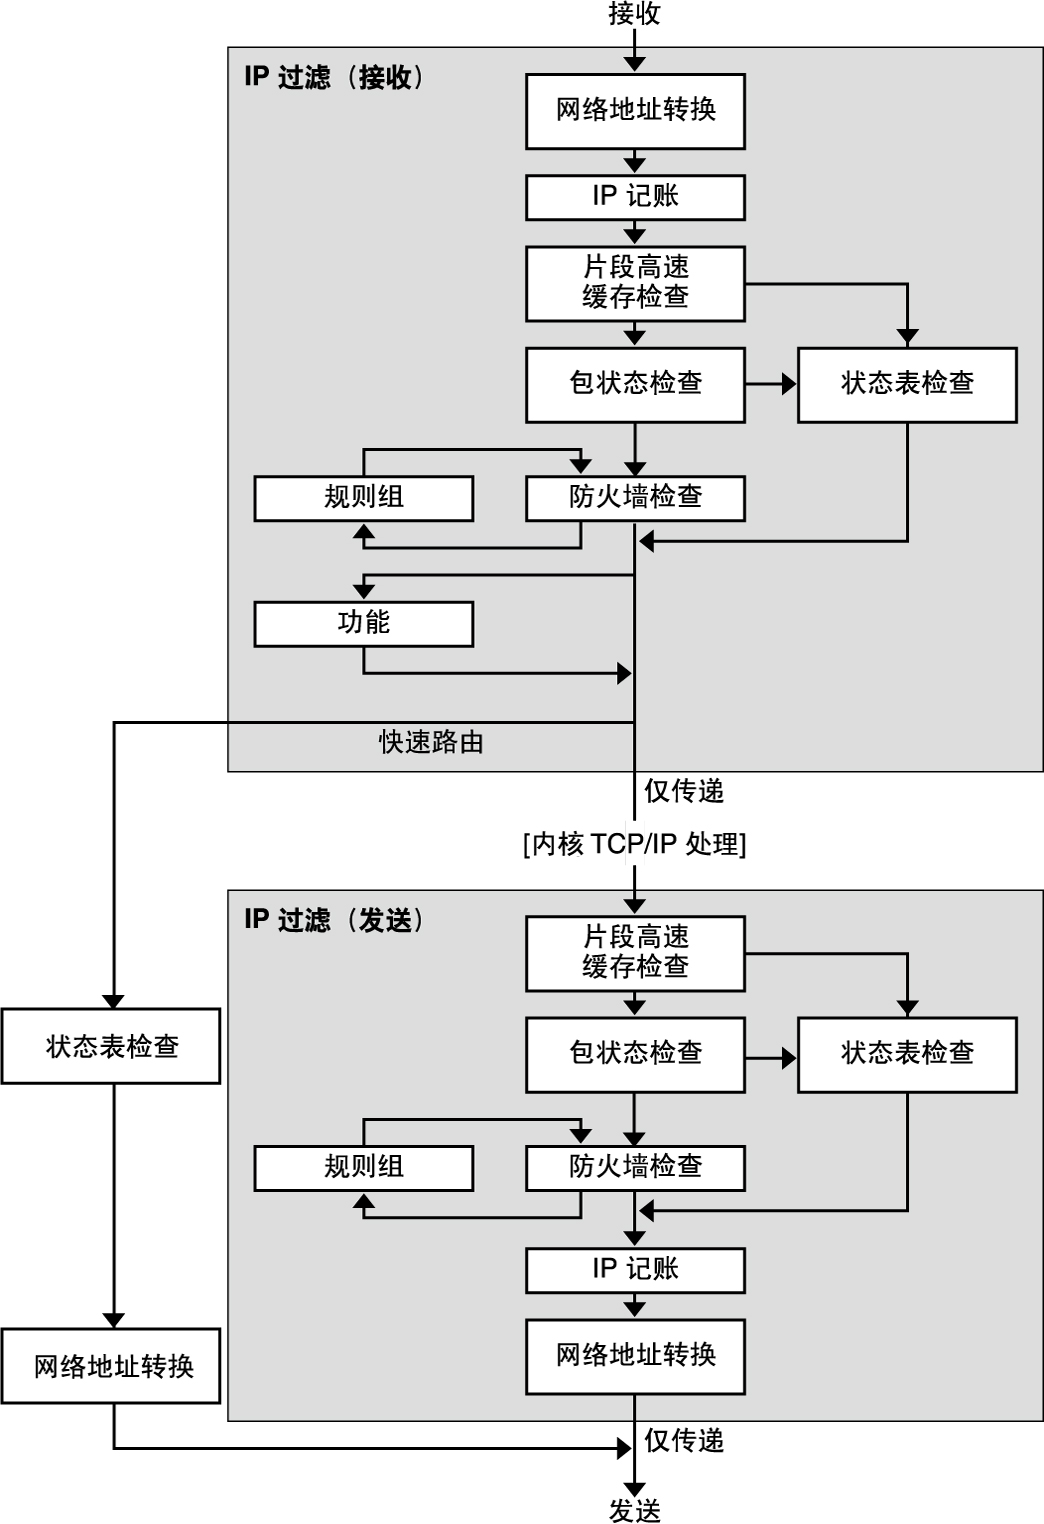 image:说明与 IP 过滤器包处理关联的步骤顺序。